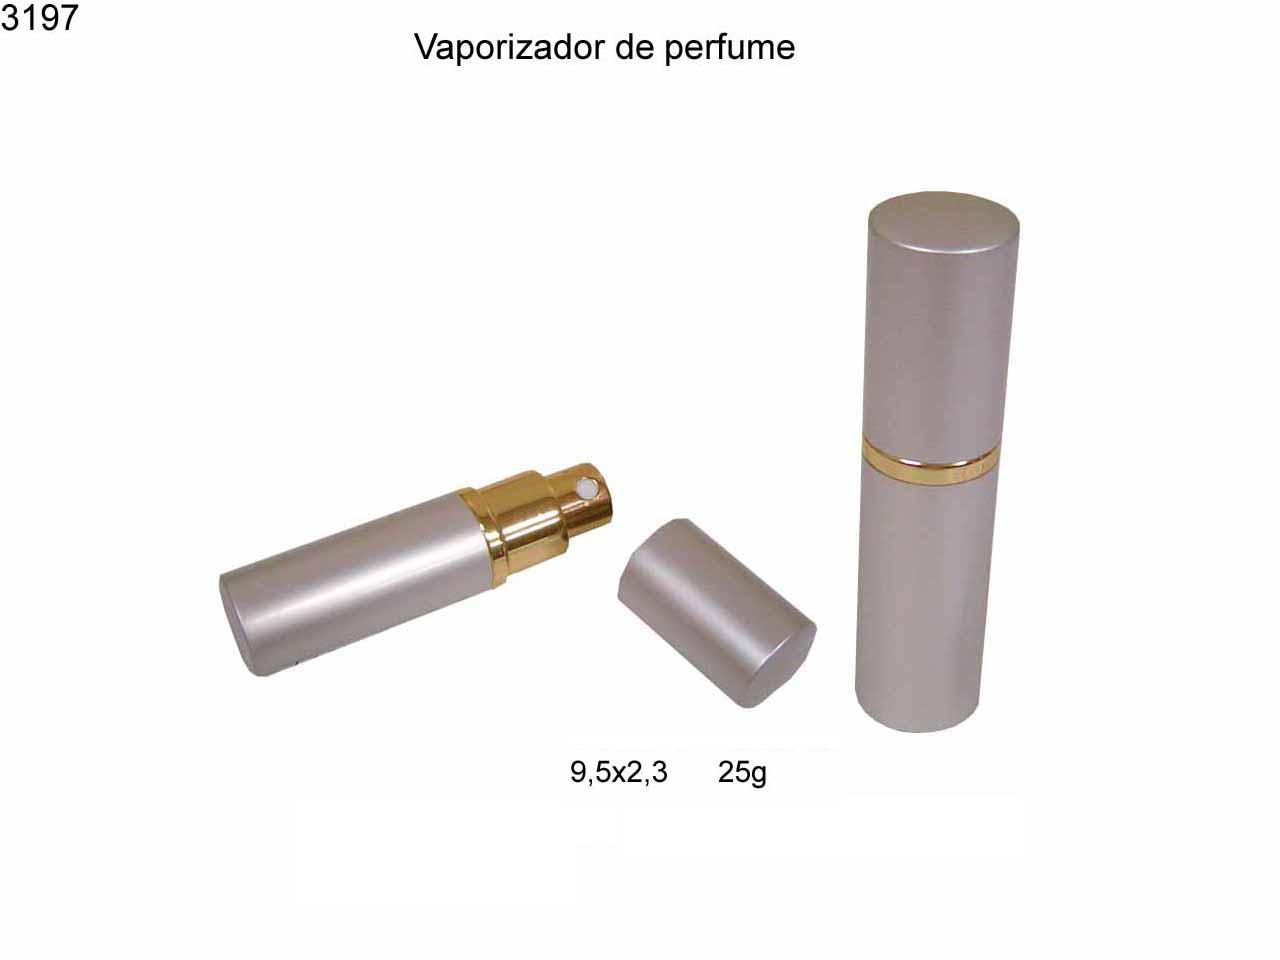 Vaporizador perfume 10 ml (3197)